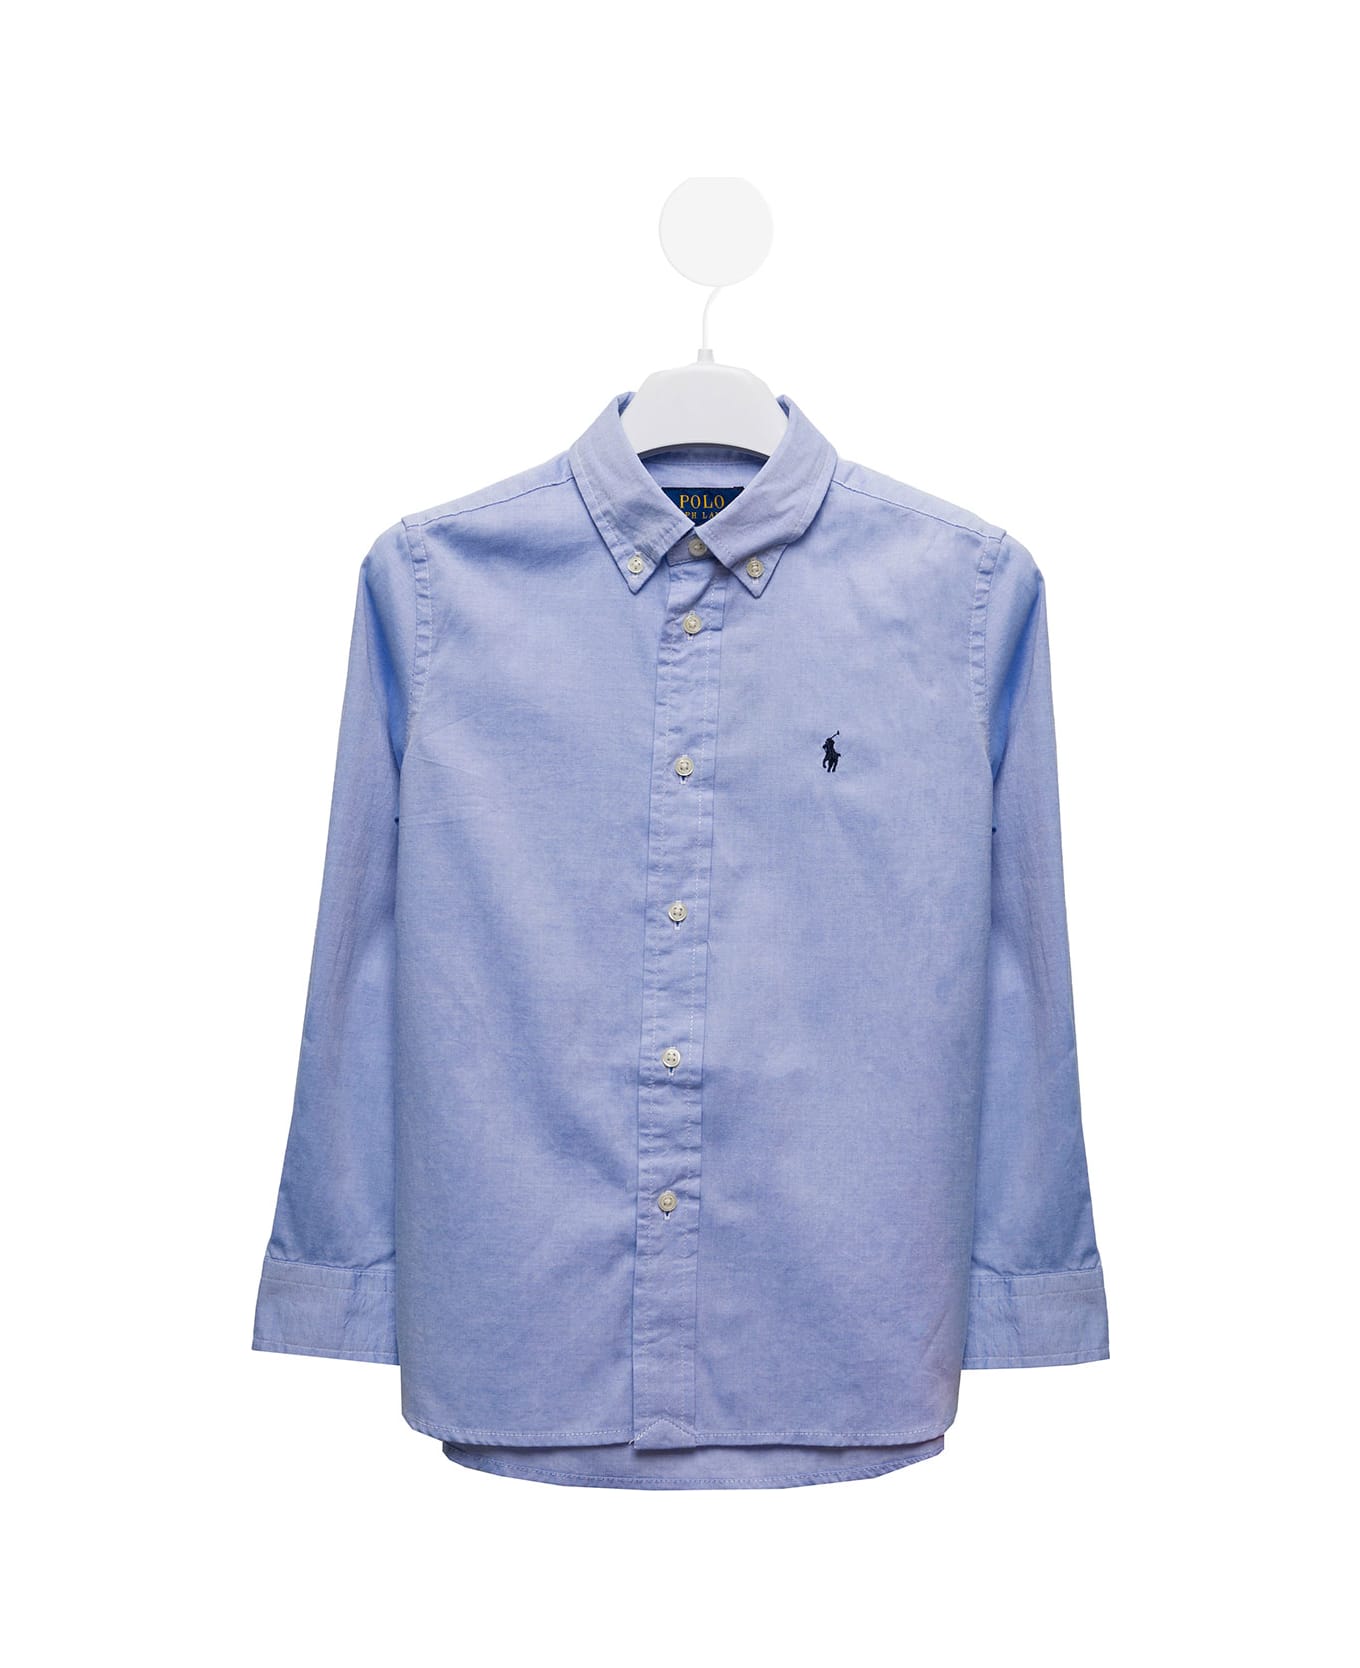 Ralph Lauren Light Blue Cotton Poplin Shirt With Logo Kids Boy - Blue シャツ